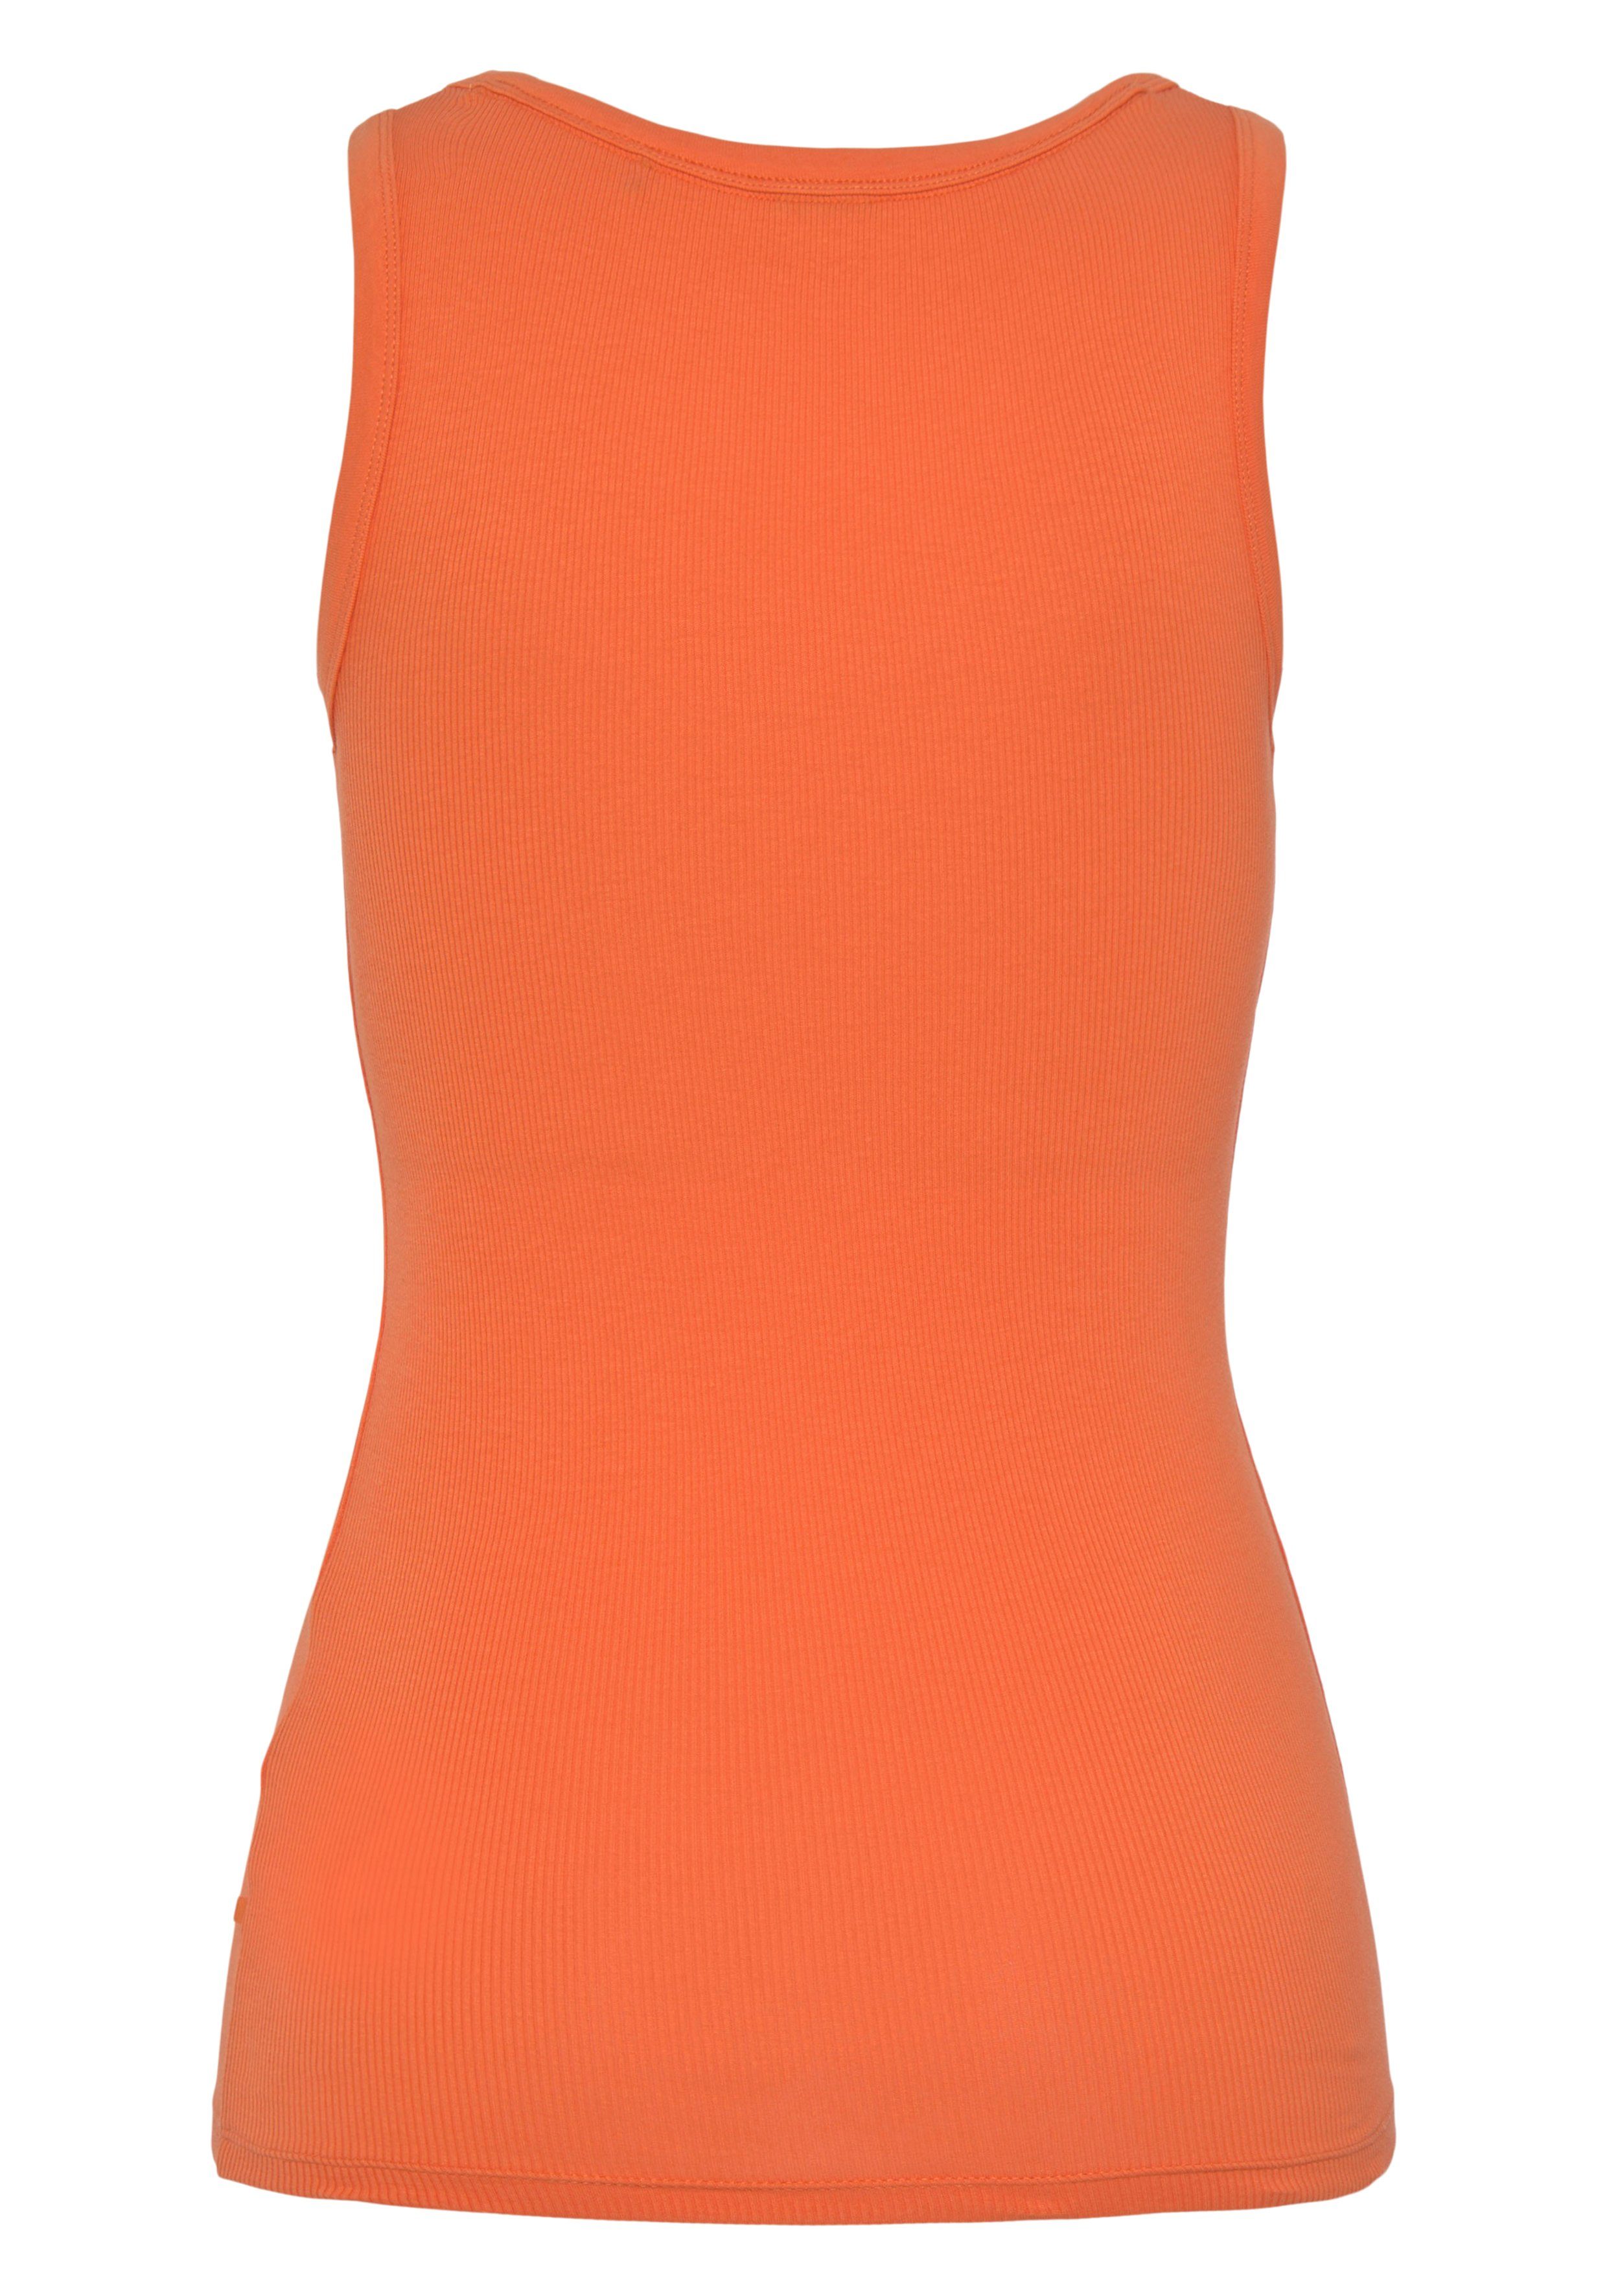 BOSS Markenstreifen ORANGE BOSS innen mit Muskelshirt Bright_Orange